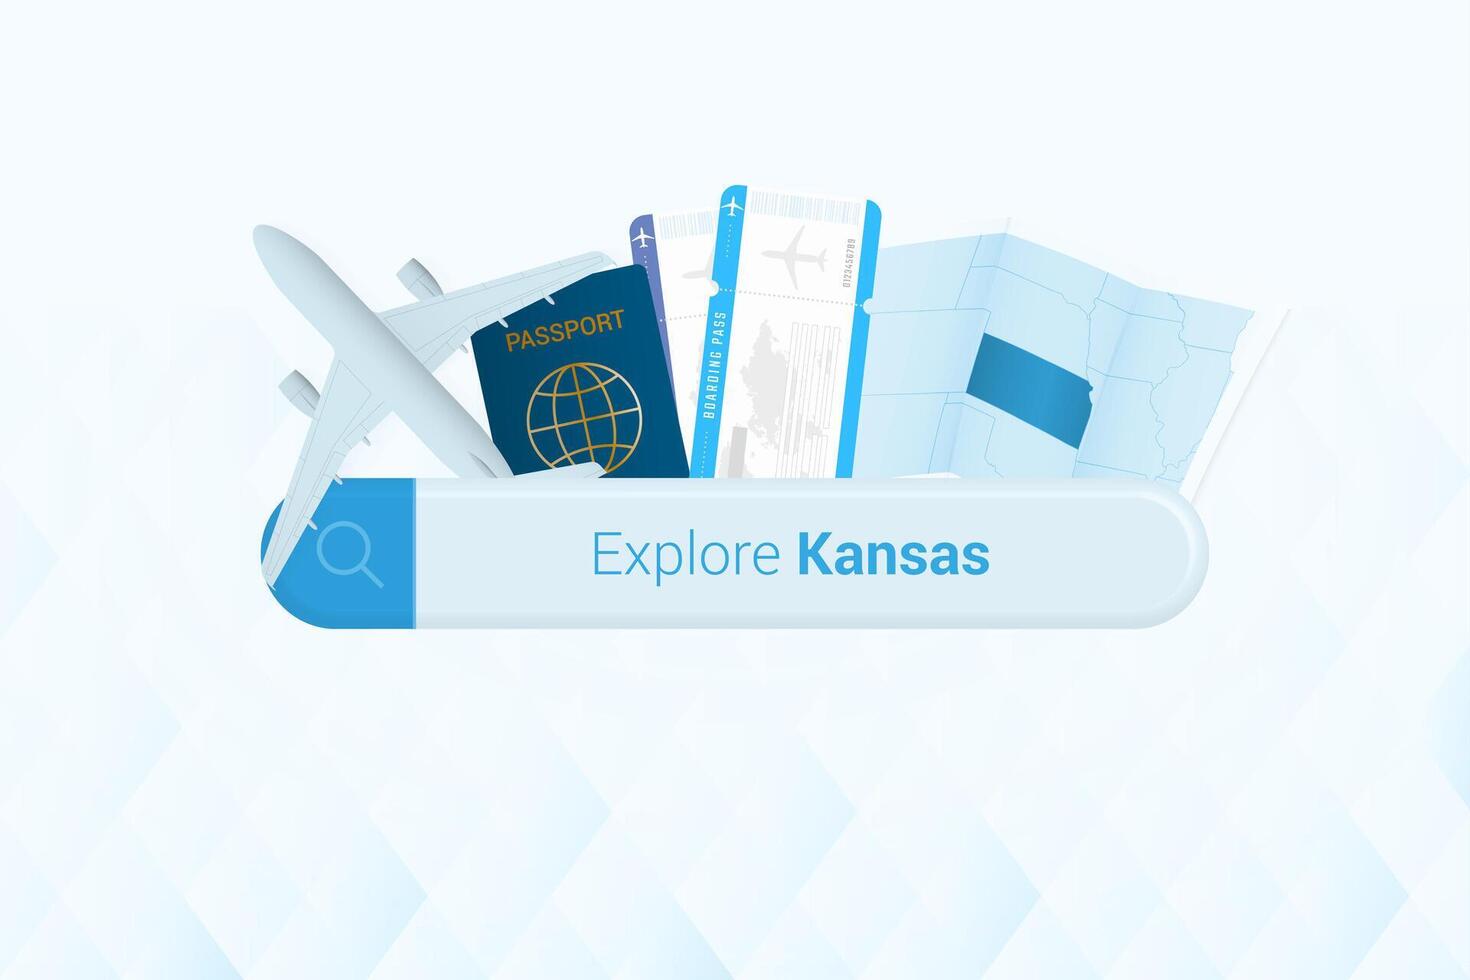 recherche des billets à Kansas ou Voyage destination dans Kansas. recherche bar avec avion, passeport, embarquement passer, des billets et carte. vecteur